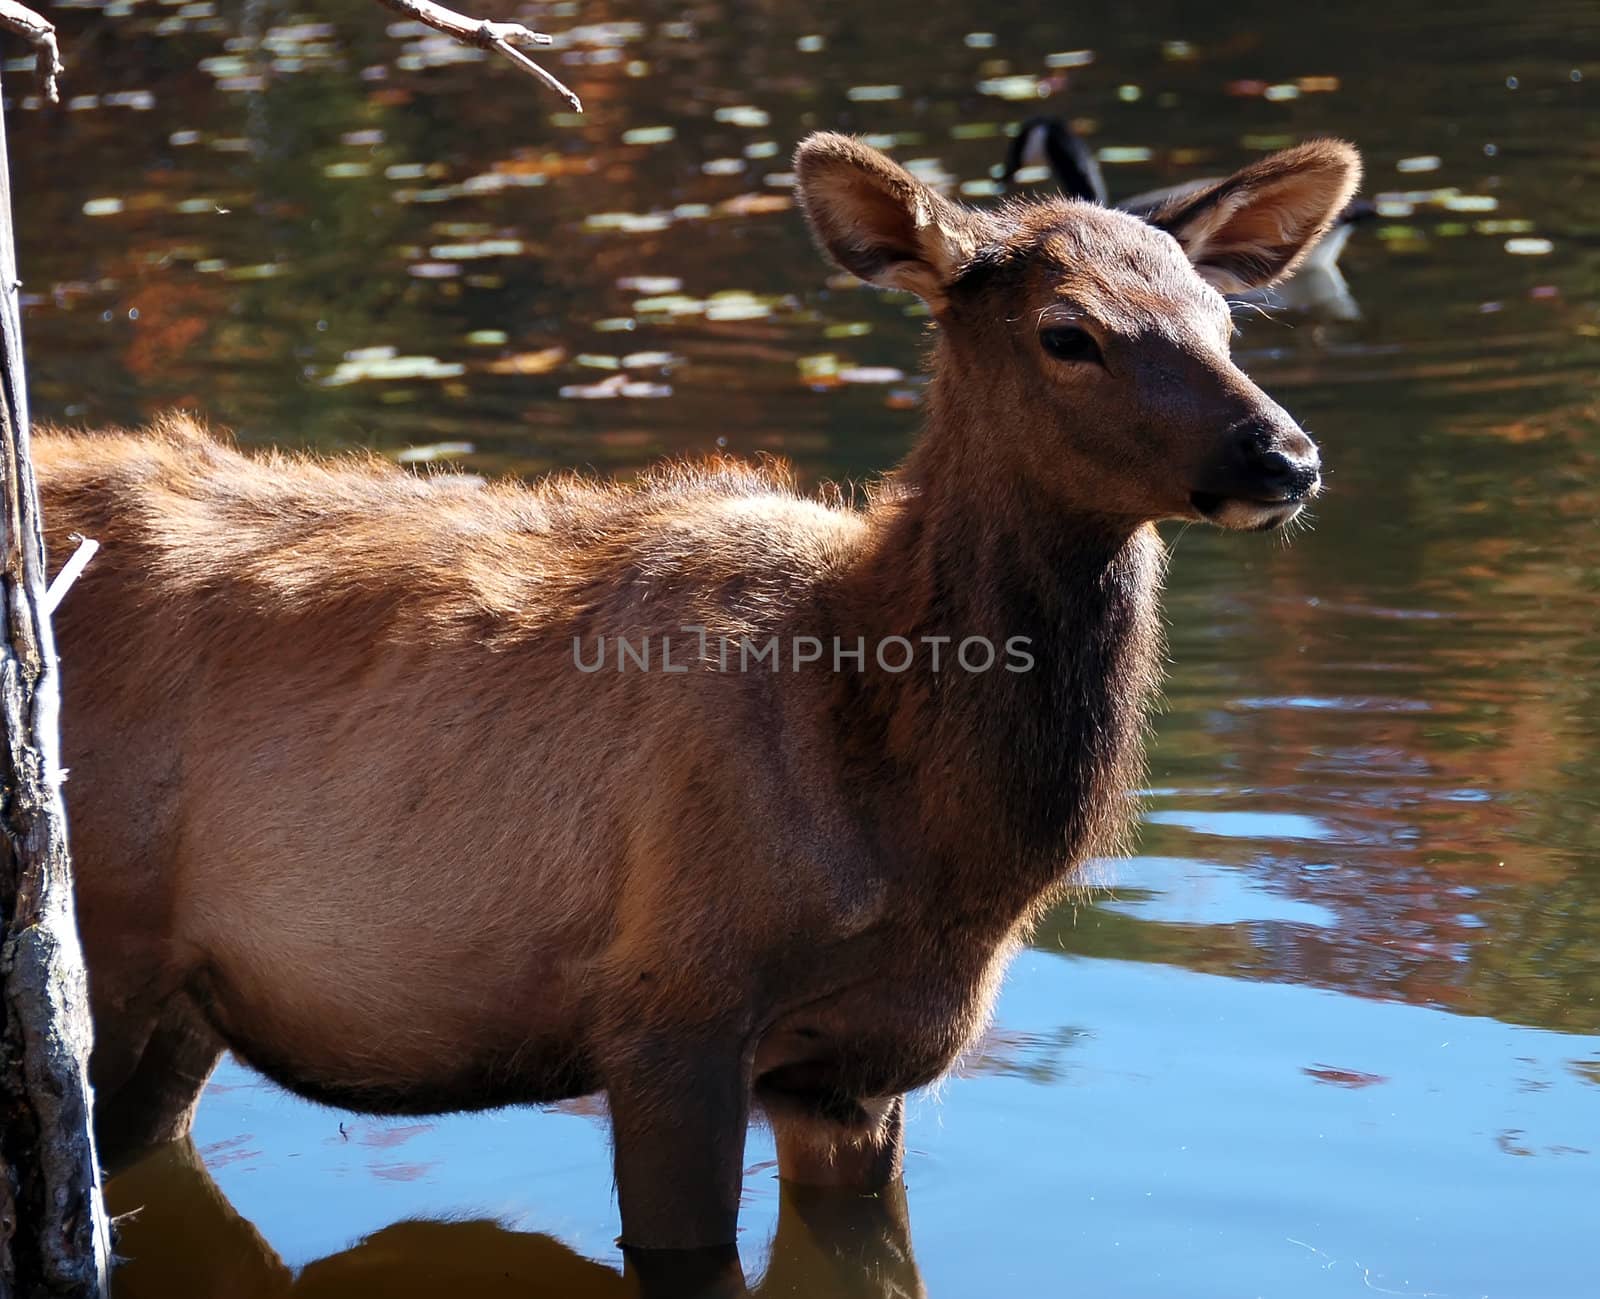 Elk (Cervus canadensis) in water by nialat